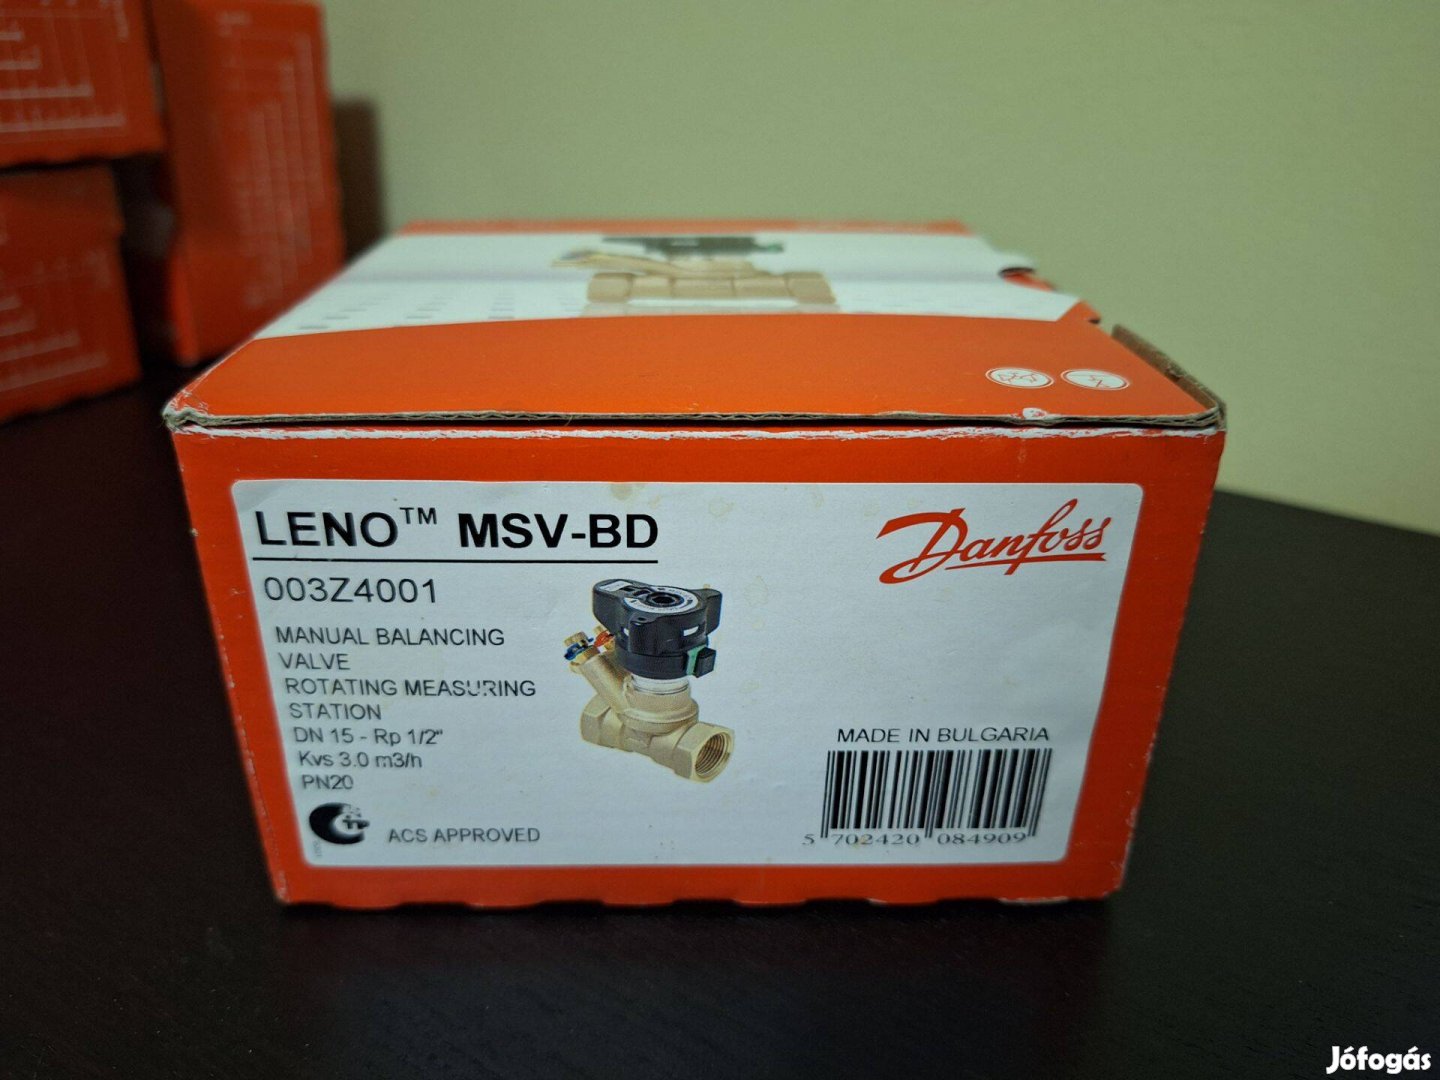 Danfoss Leno MSV-BD 003Z4001 DN15 Rp 1/2" (több darab)